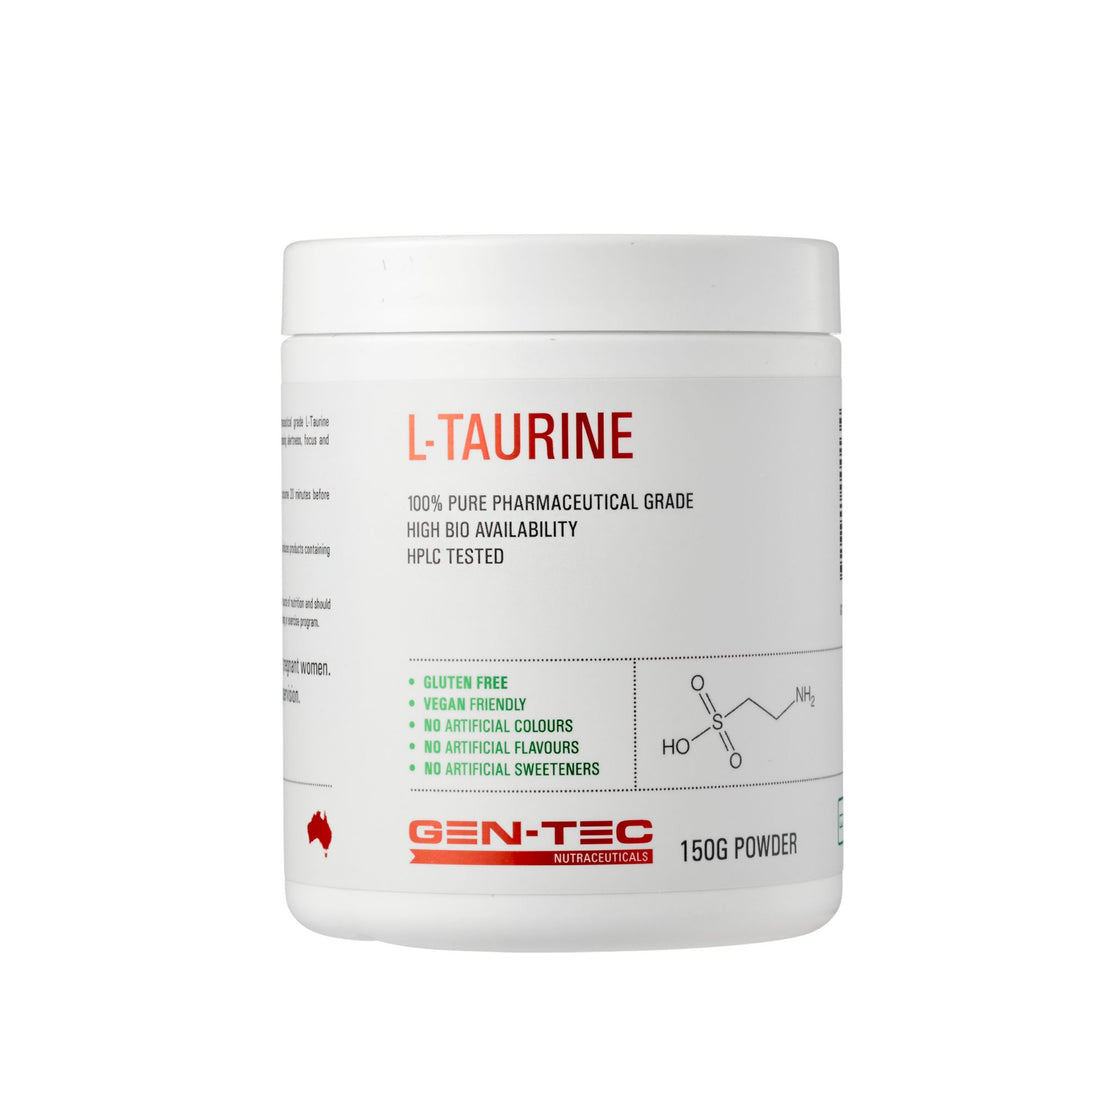 Gentec L-Taurine Nutraceuticals